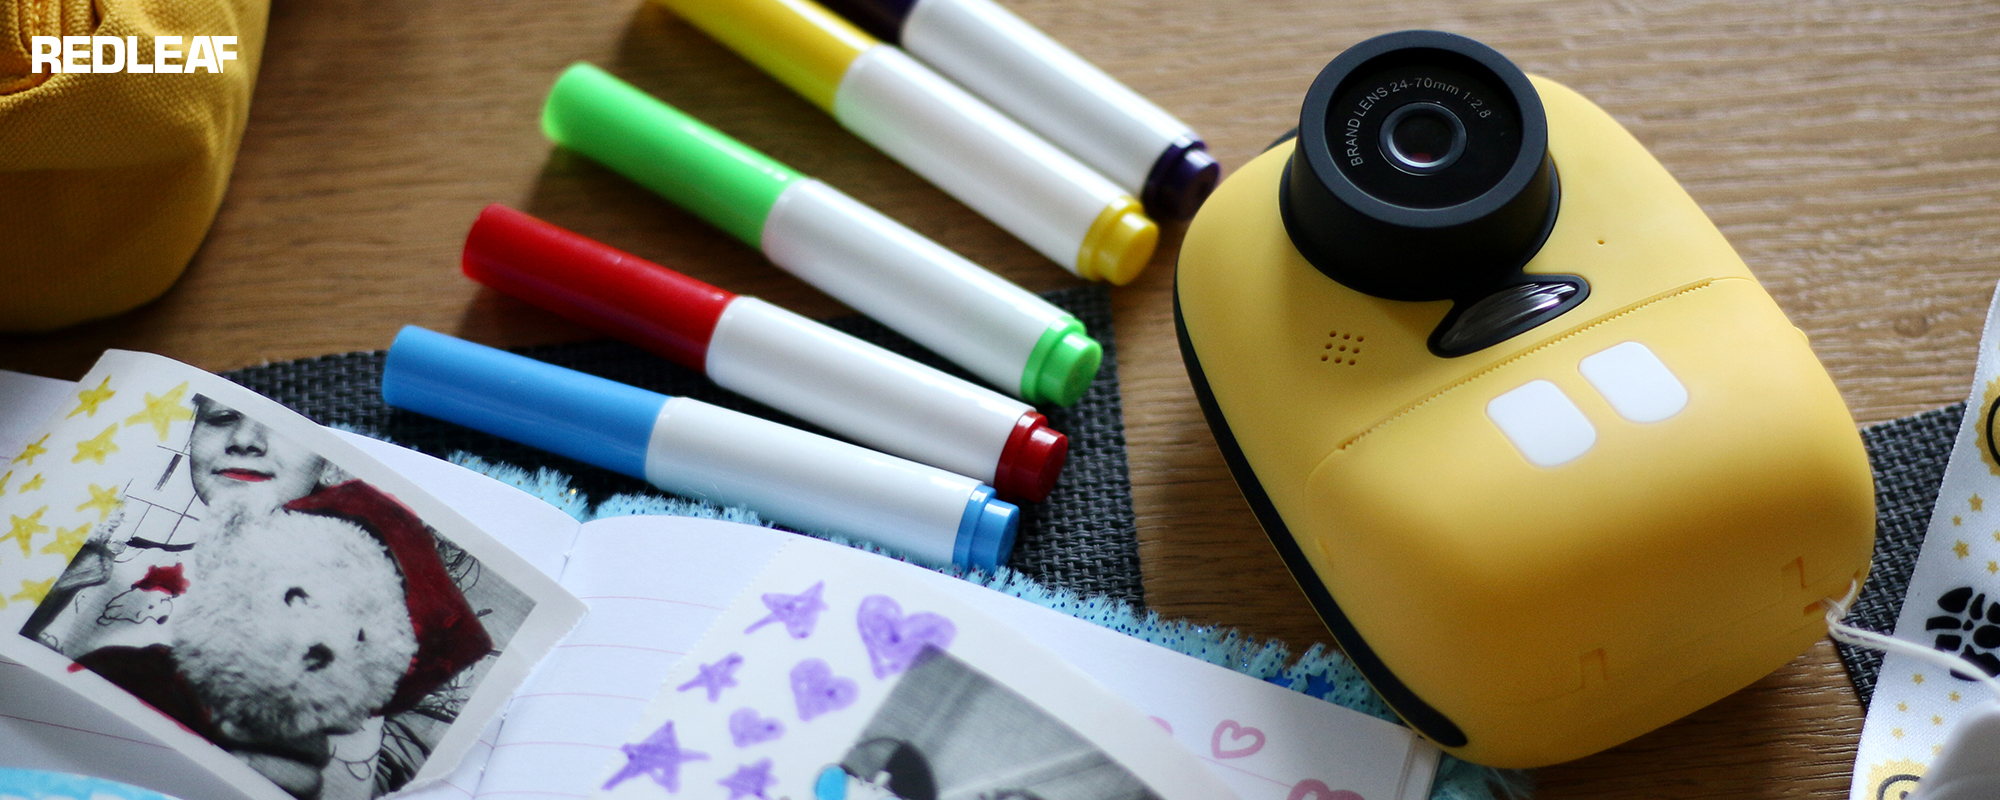 Aparat fotograficzny z drukarką dla dzieci Redleaf BOB leżący na biurku razem z kolorowymi mazakami